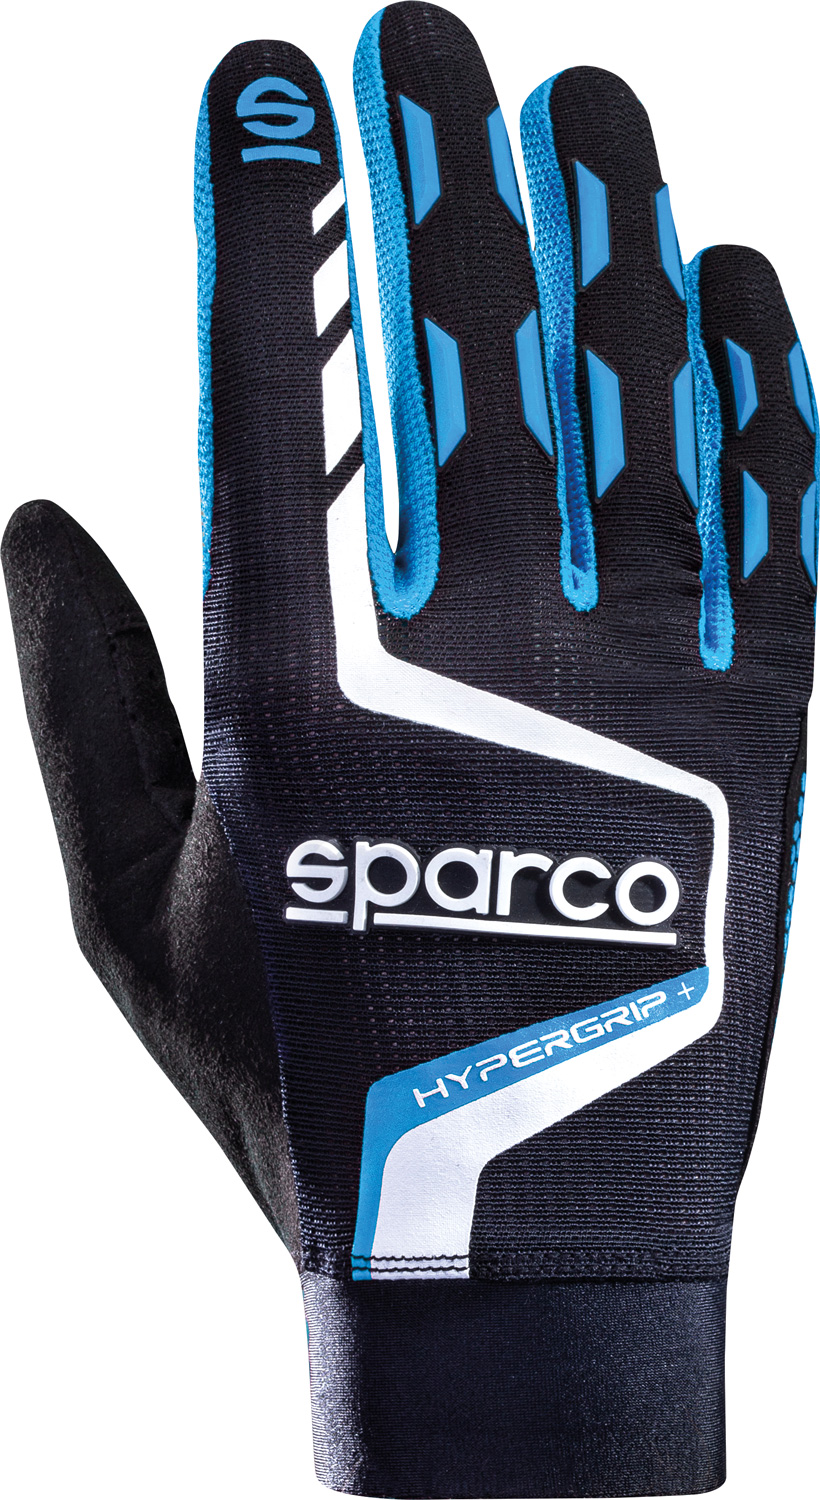 Sparco Gaming Handschuh Hypergrip+, schwarz/blau